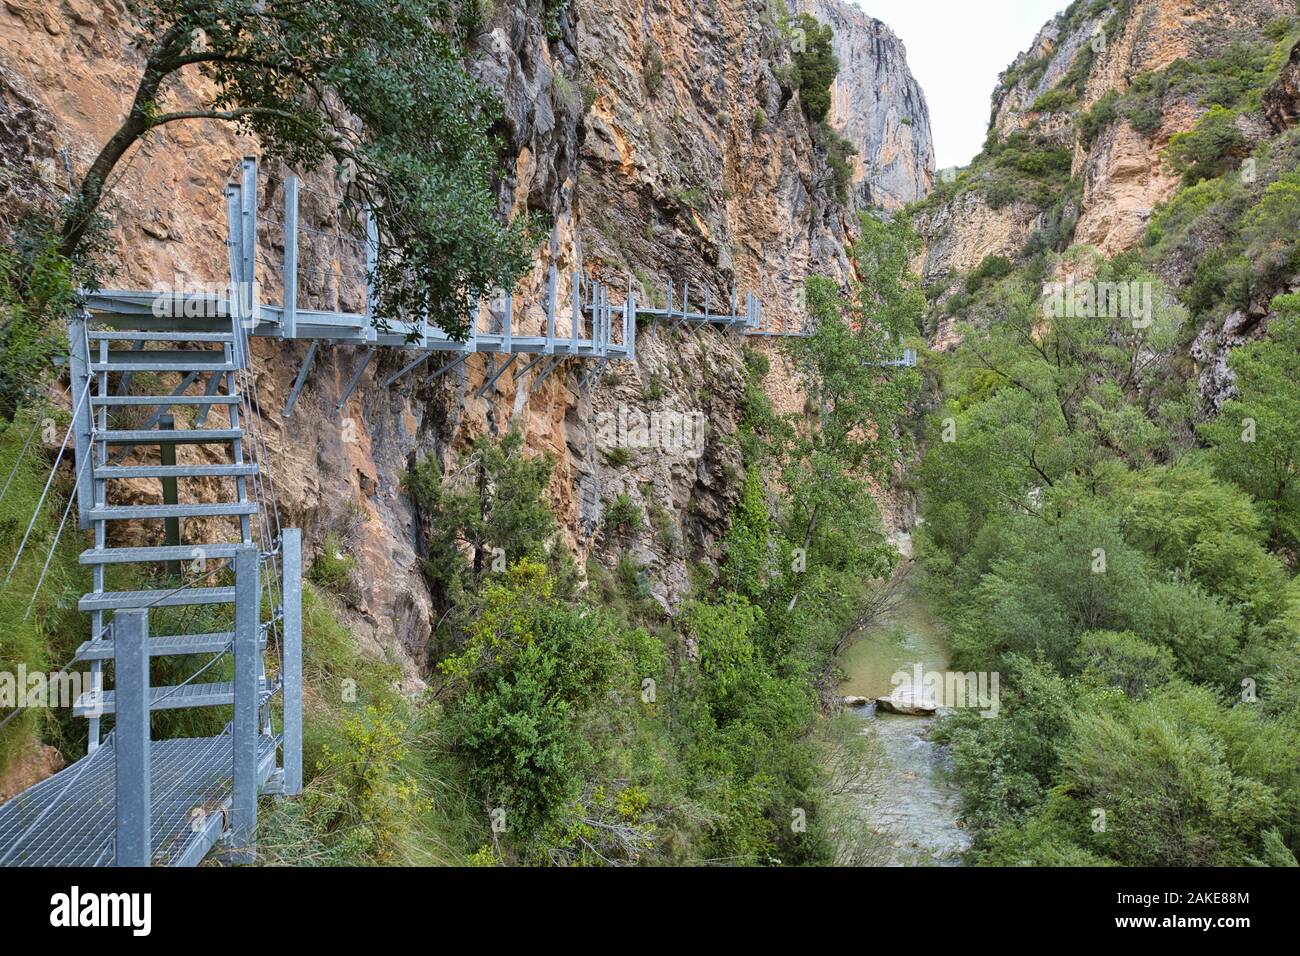 Ruta de las Pasarelas, a walking trail in the Rio Vero Canyon near Alquezar  in Aragon, Spain Stock Photo - Alamy